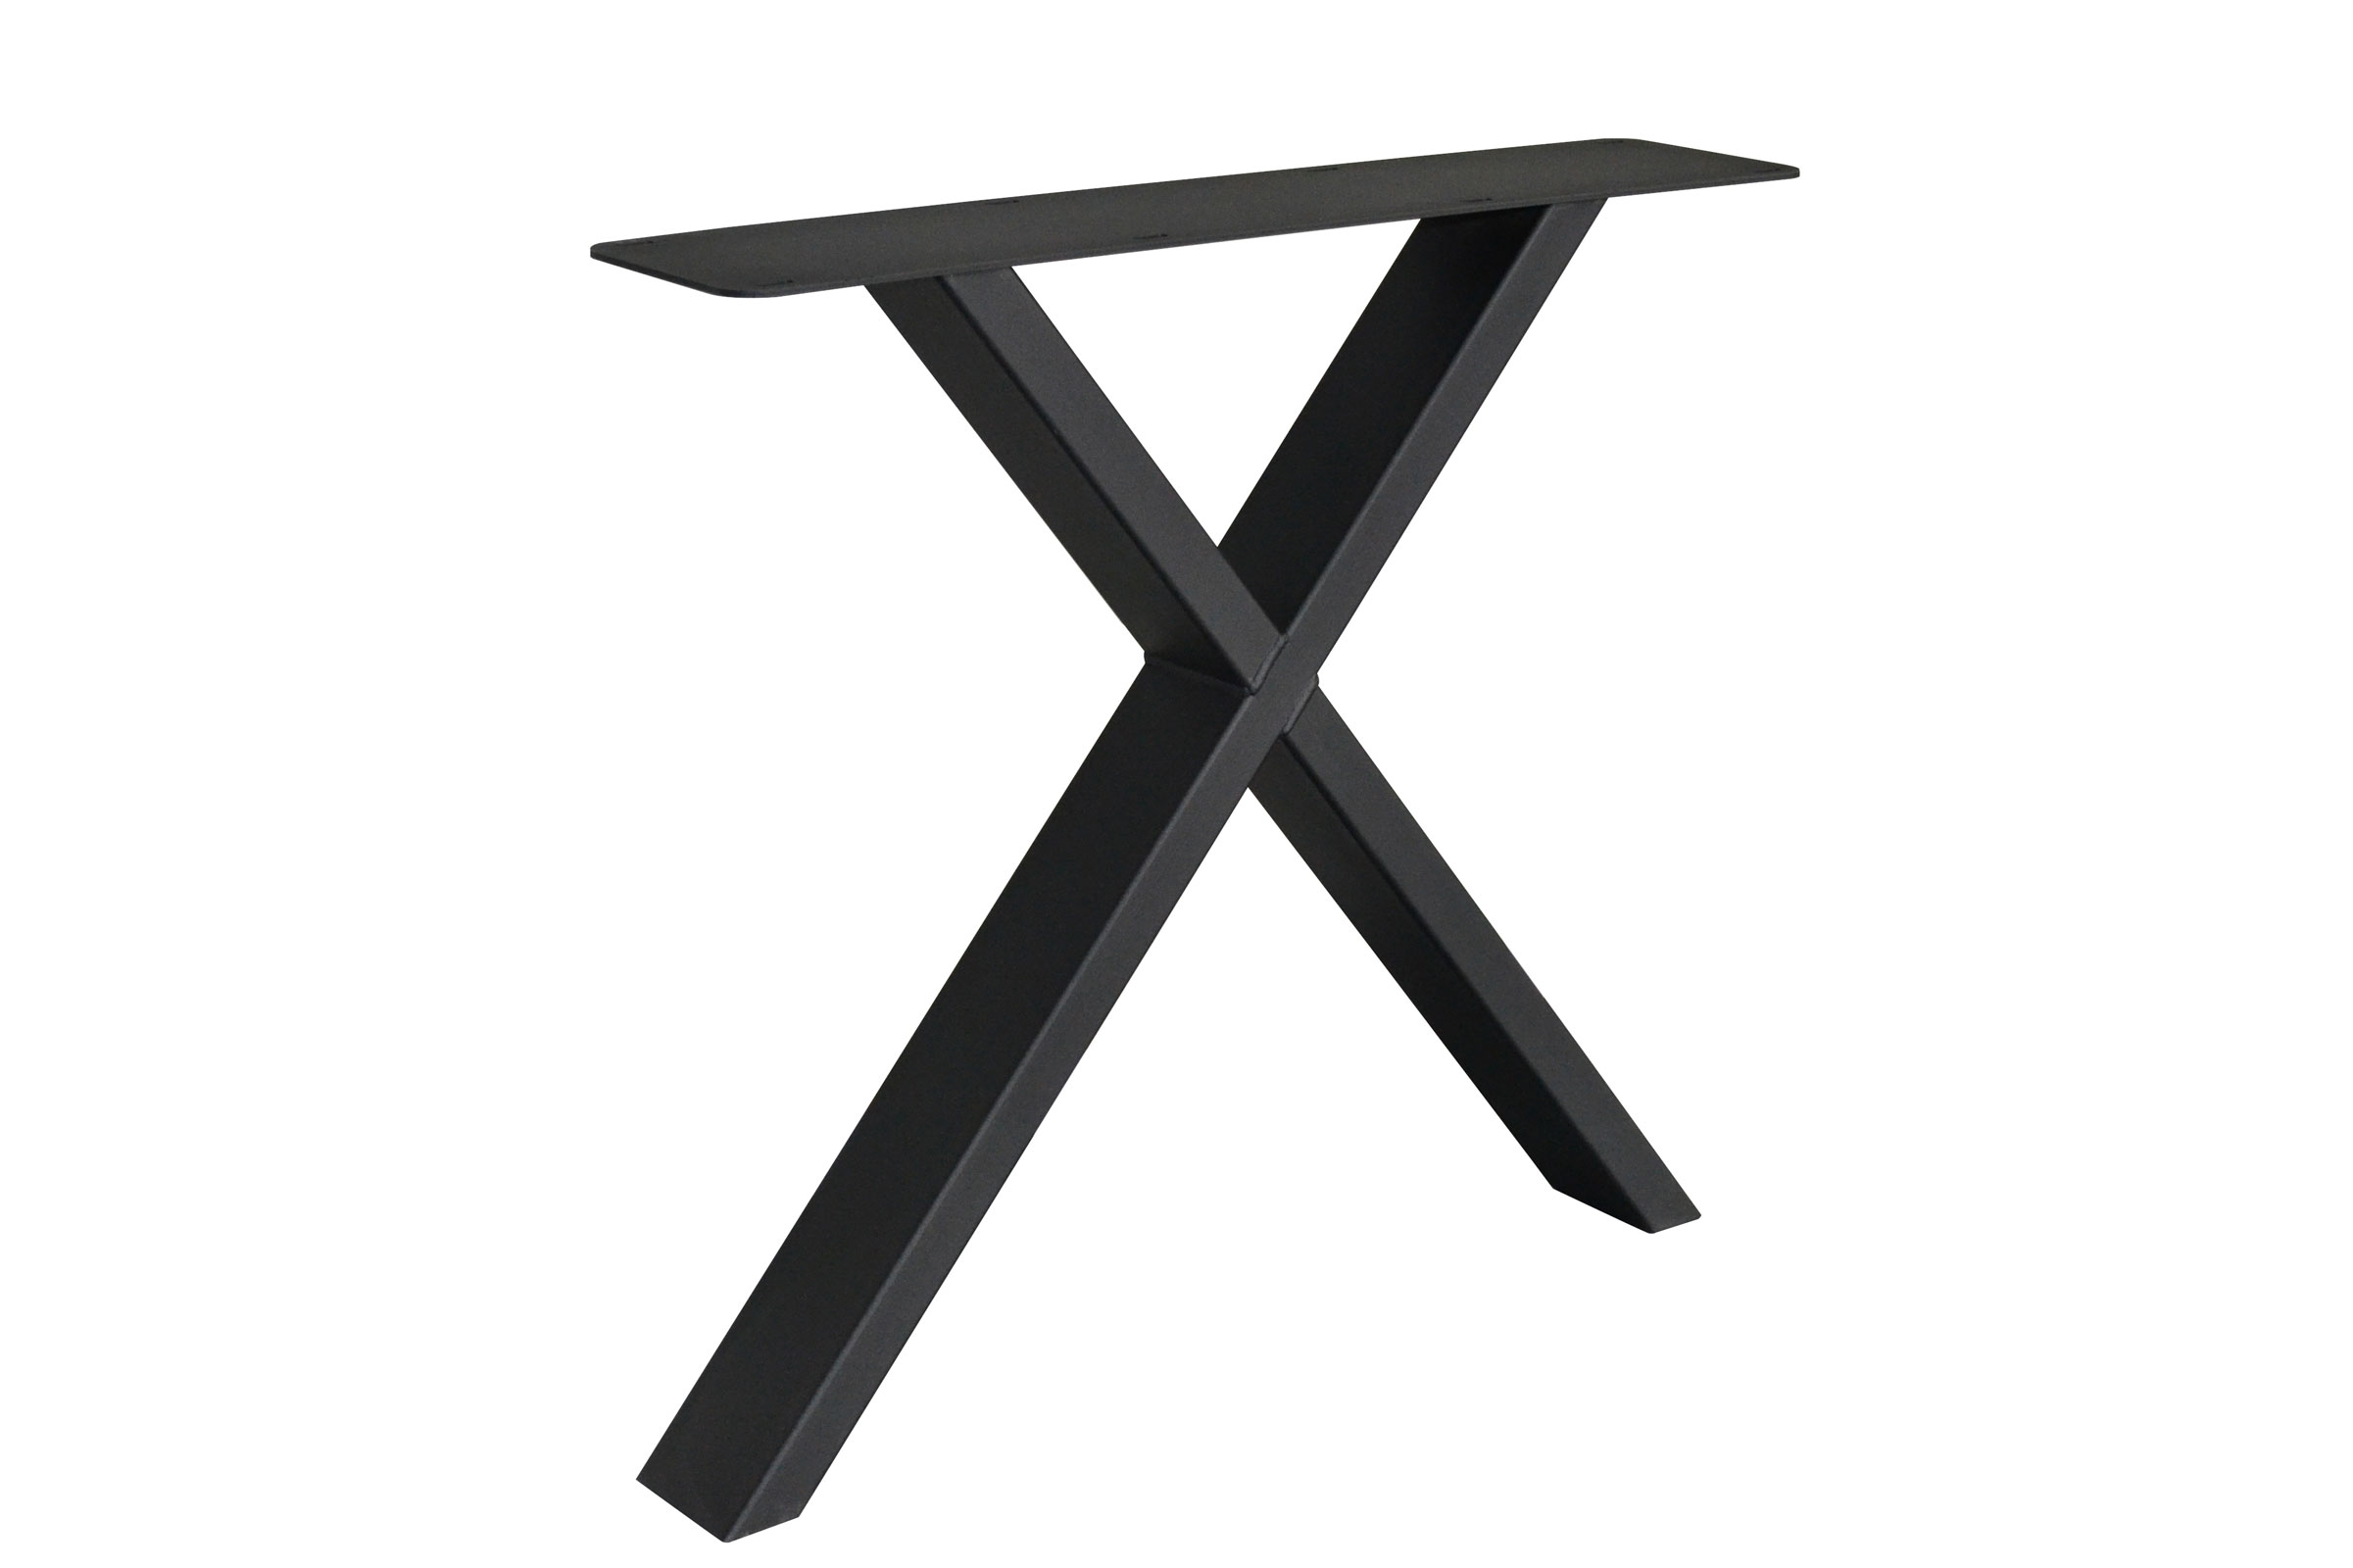 Edle Tischuntergestelle aus Metall X-Line - ideale für den Eiche-Massivholztisch - moderne X-Form 